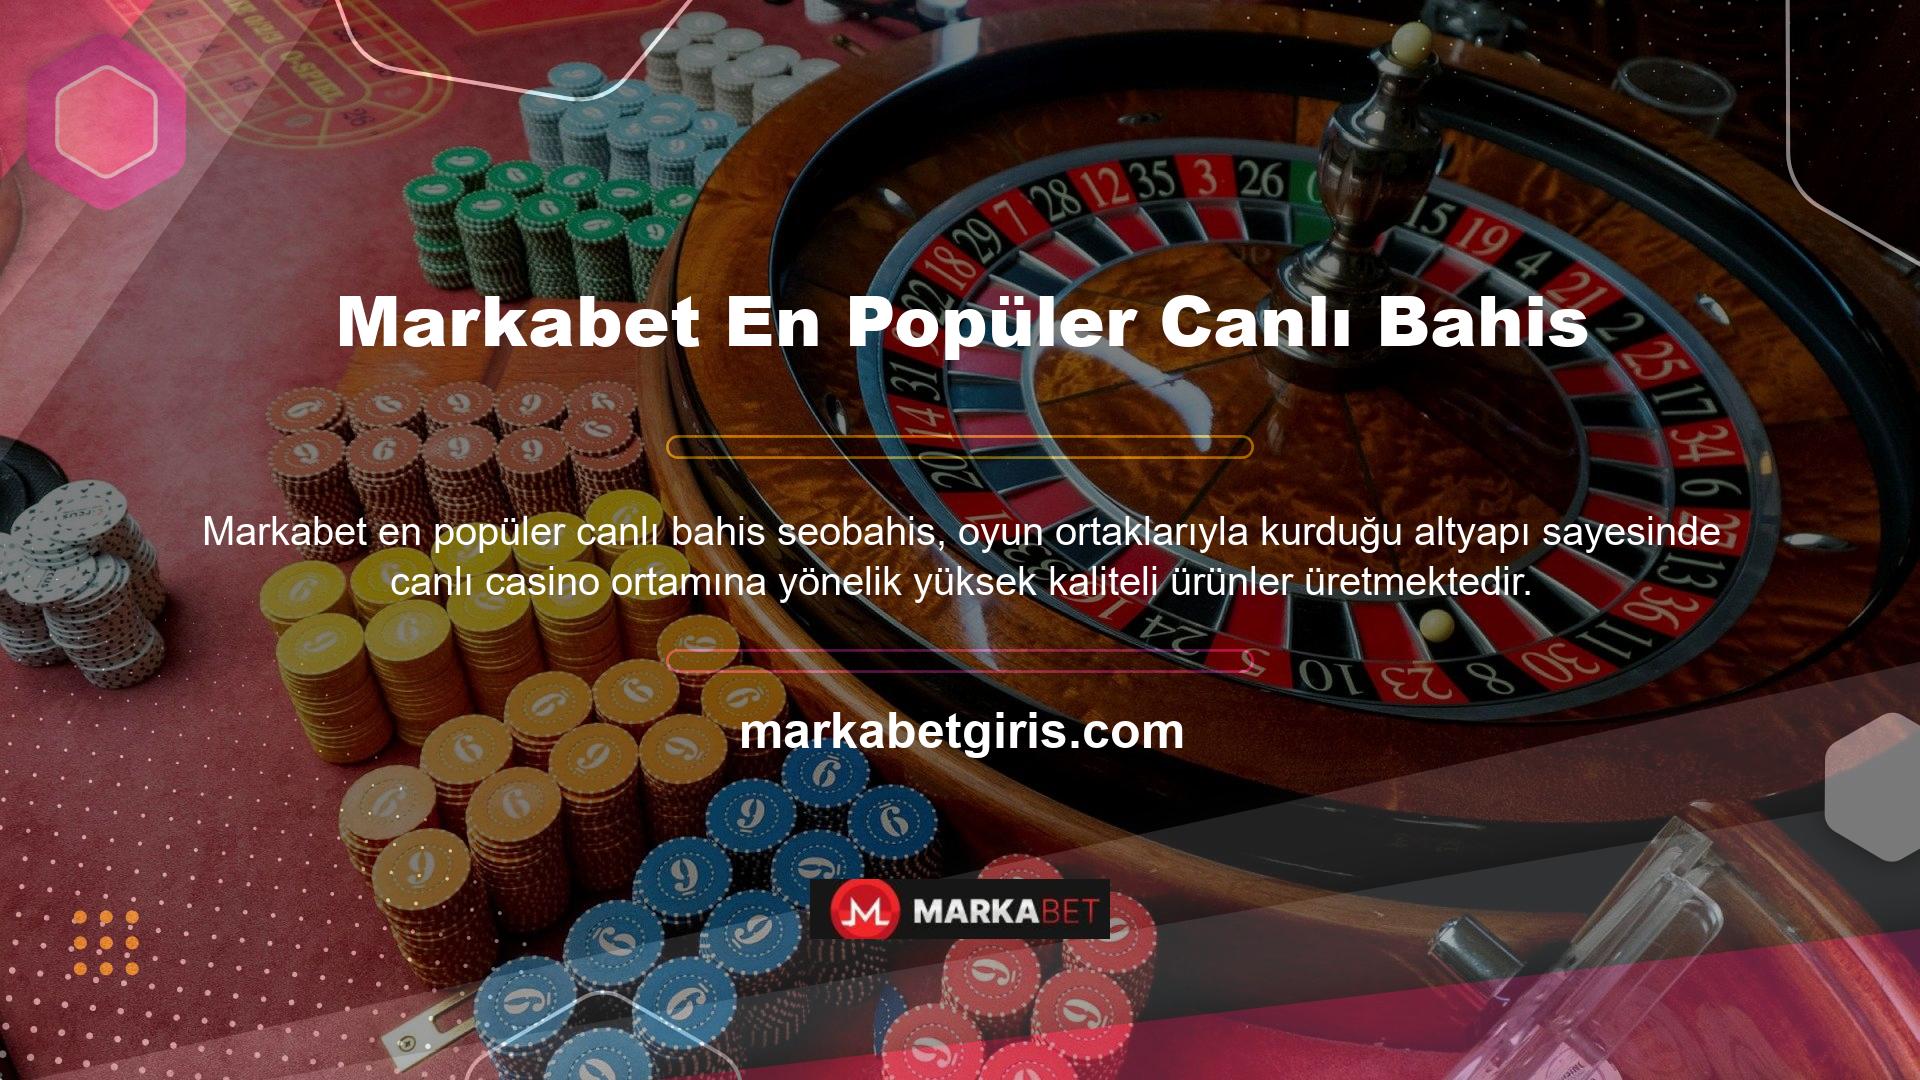 Markabet Canlı casino oyunlarına aynı anda çok sayıda kullanıcı katılır, bu da yüksek miktarda bahis yapılmasına neden olur, ancak sistem etkilenmez